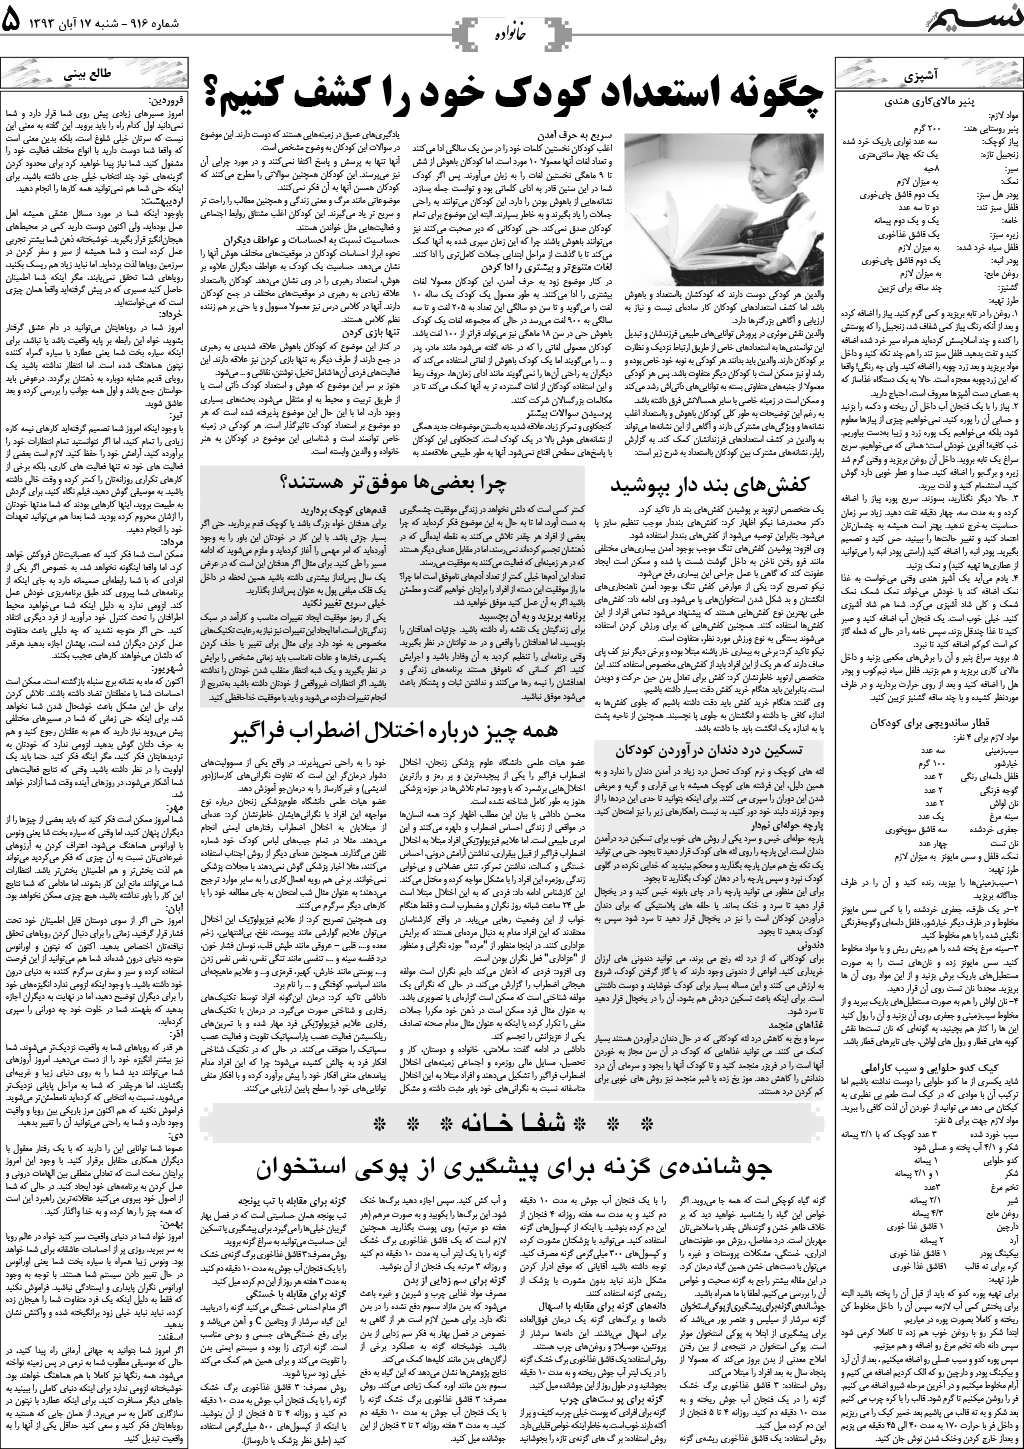 صفحه خانواده روزنامه نسیم شماره 916